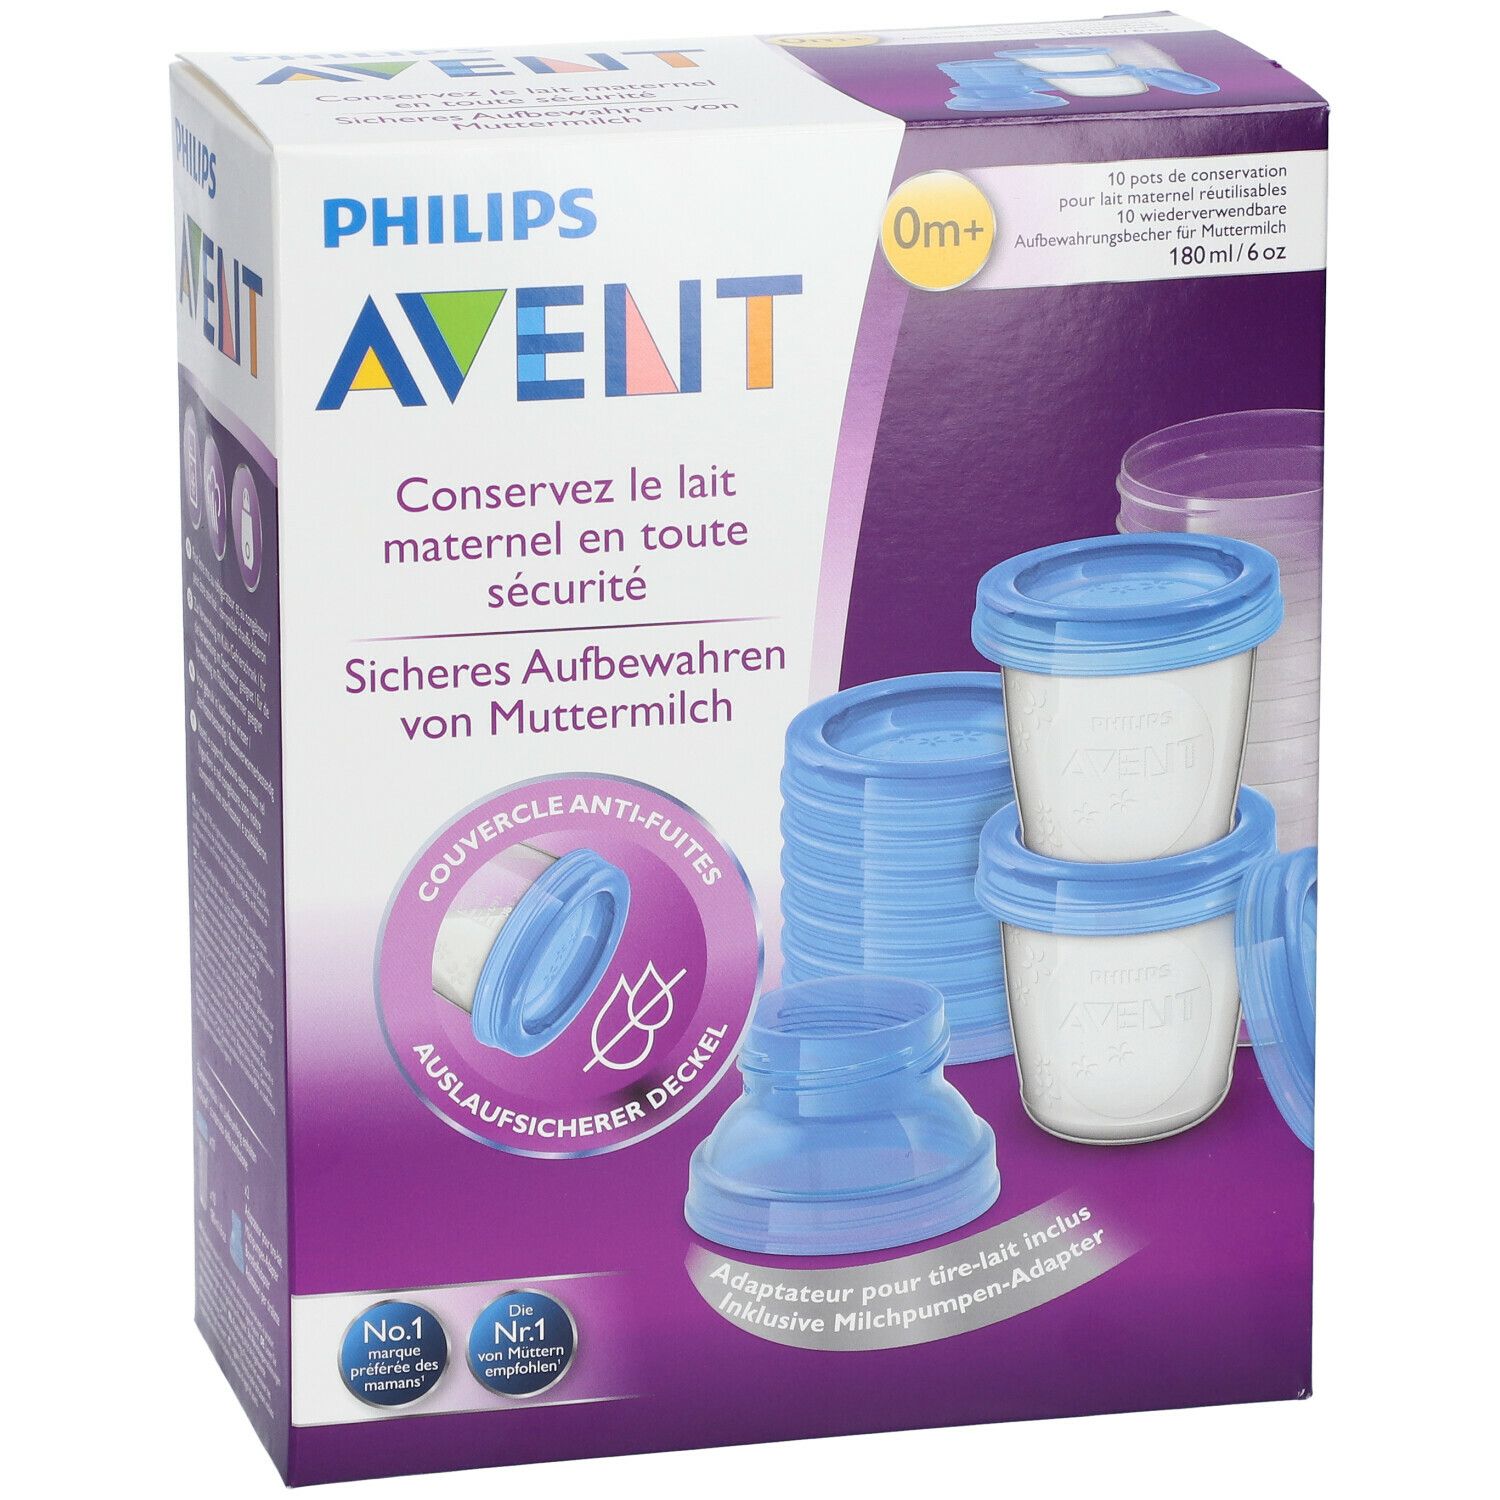 Philips Avent 10 Gläser zur Aufbewahrung von Muttermilch